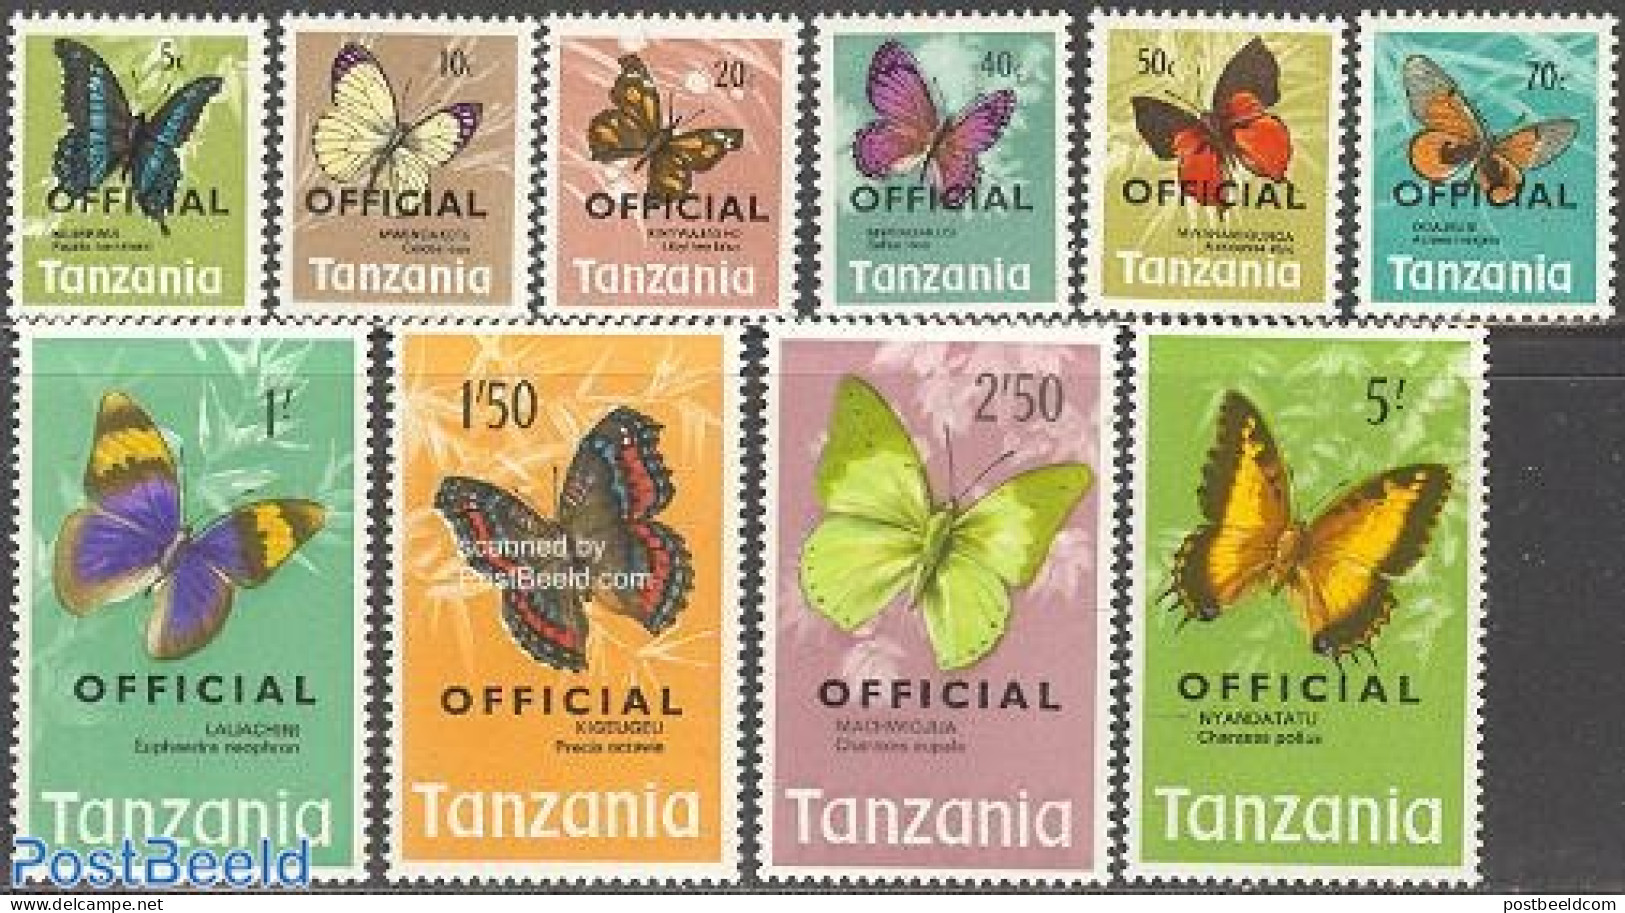 Tanzania 1973 OFFICIAL, Butterflies 10v, Mint NH, Nature - Butterflies - Tanzania (1964-...)